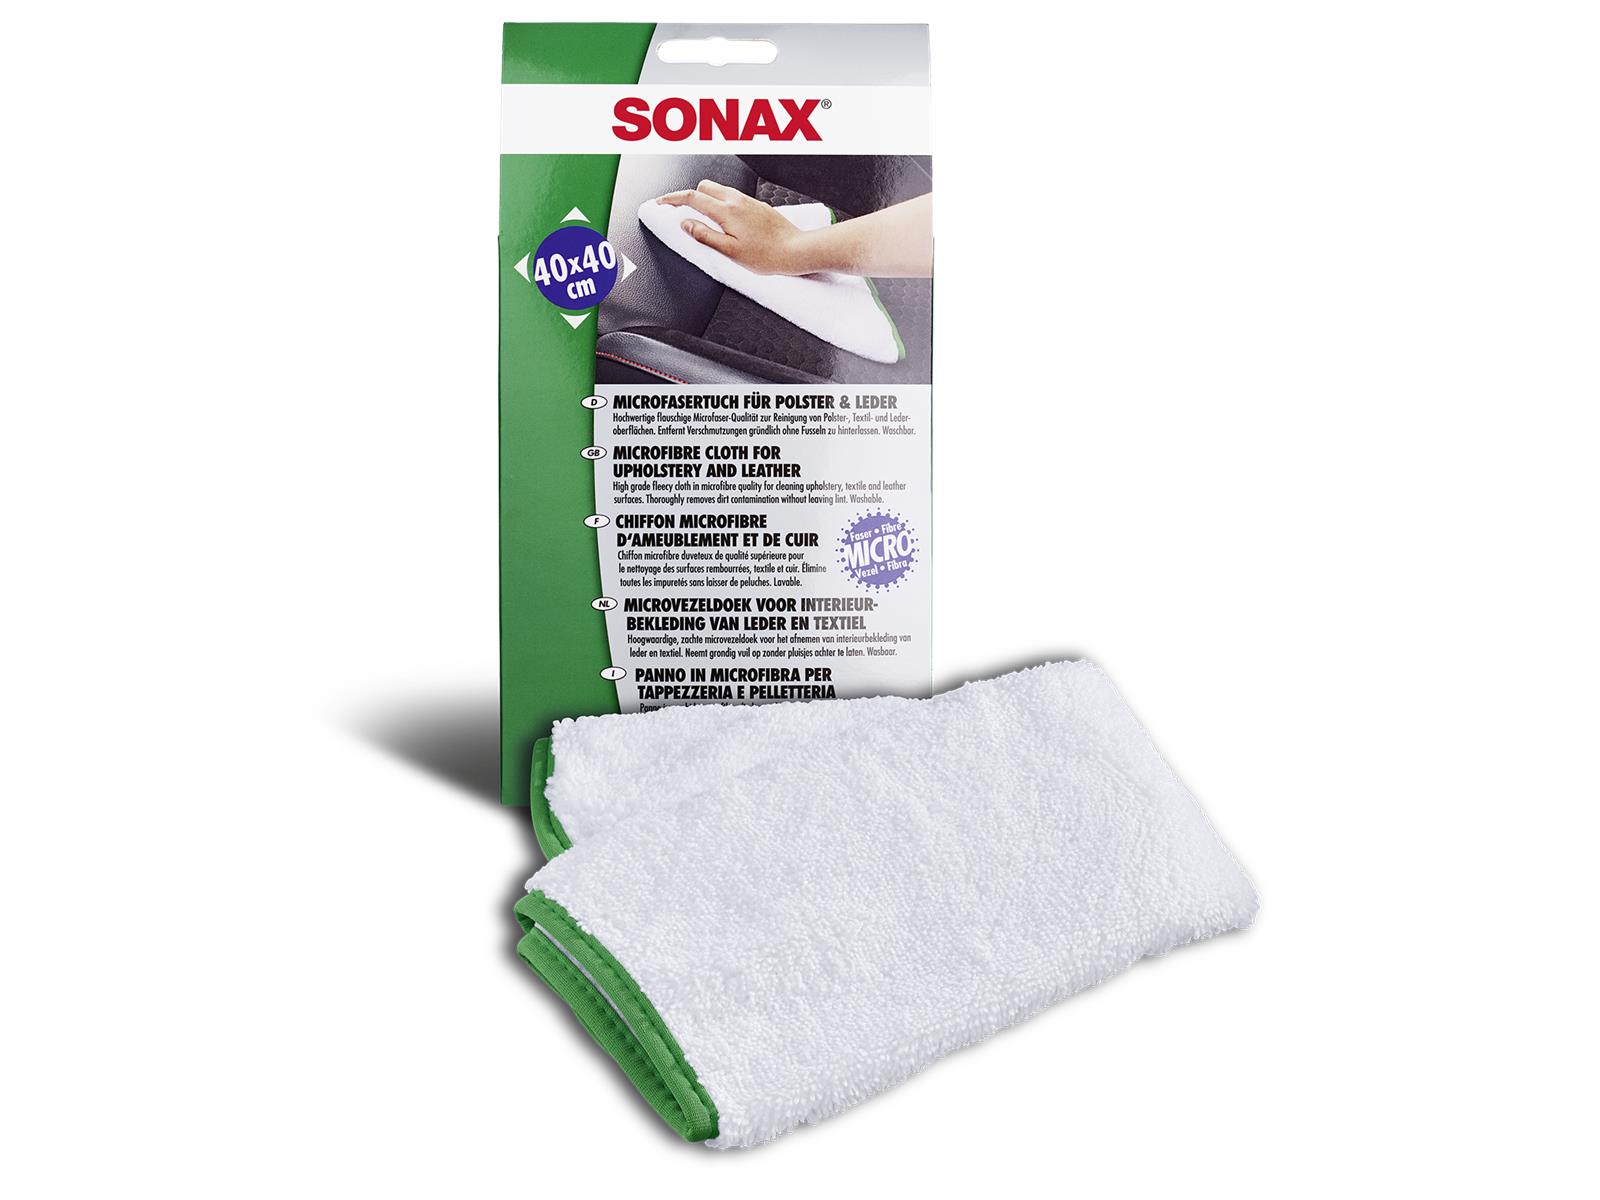 SONAX 04168000 MicrofaserTuch für Polster & Leder 83 g